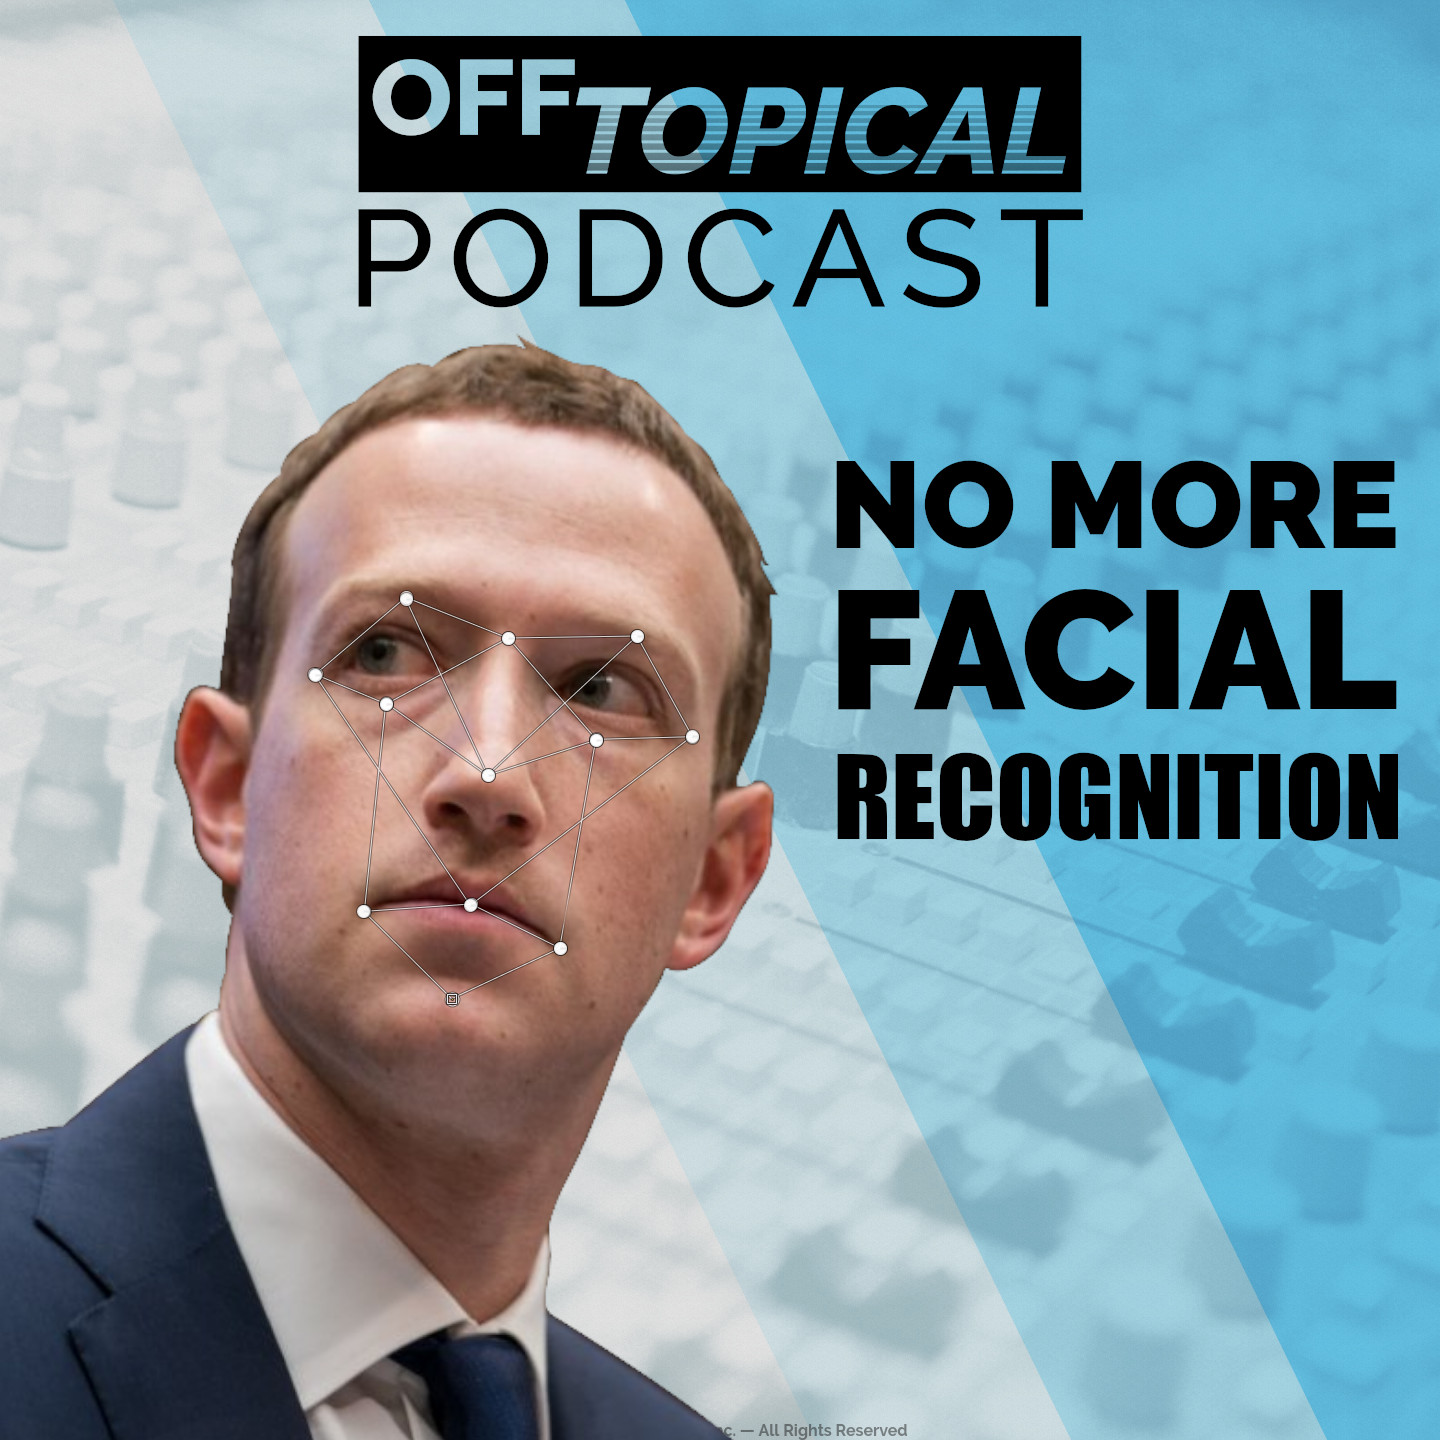 Facebook's cynical reason for ending facial recognition